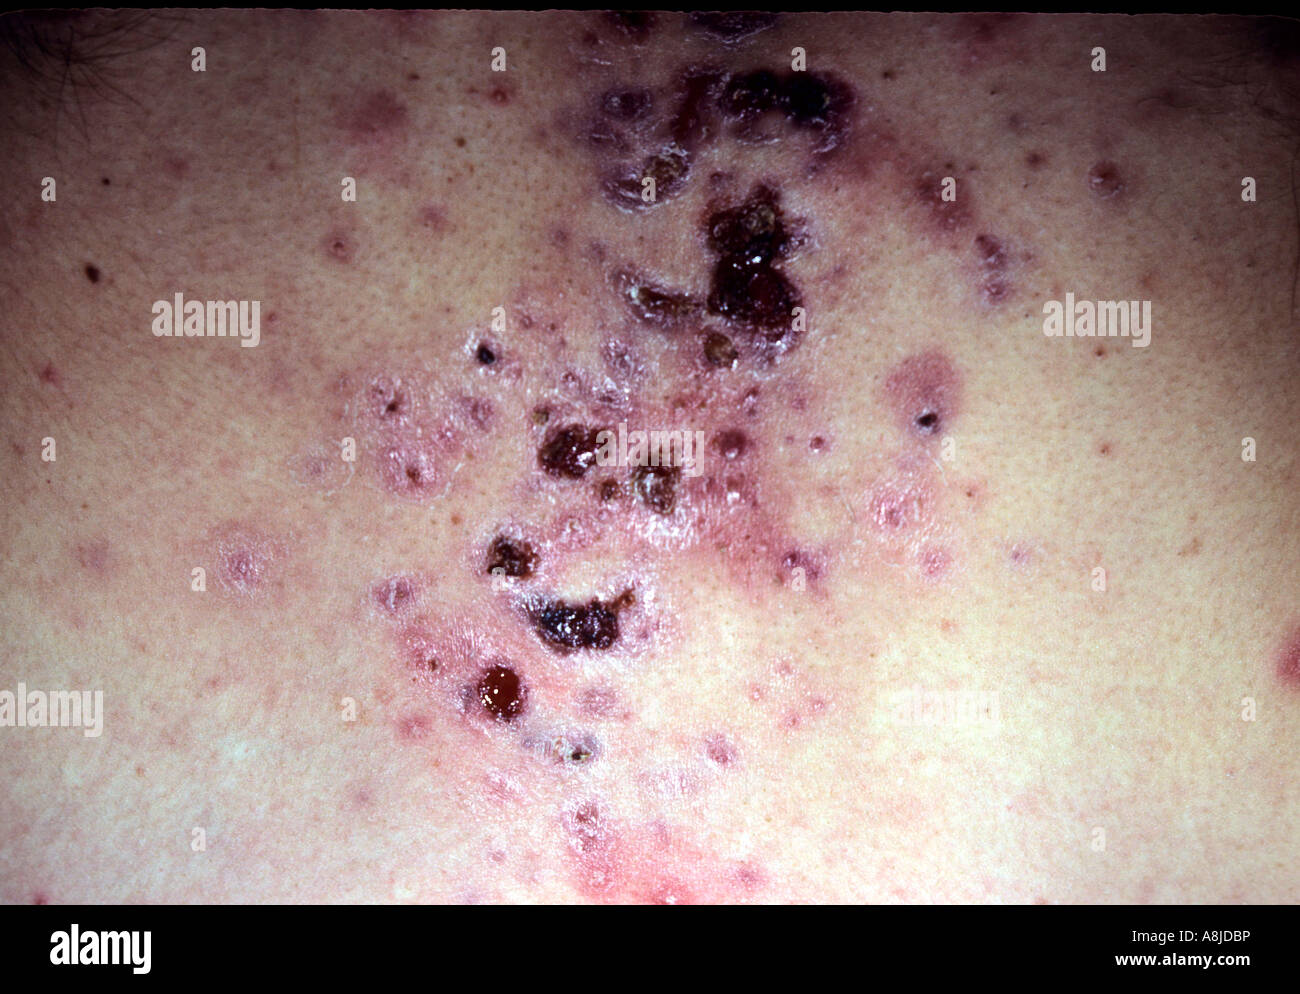 Acne vulgaris dermatologia punti neri sul petto maschio Foto Stock